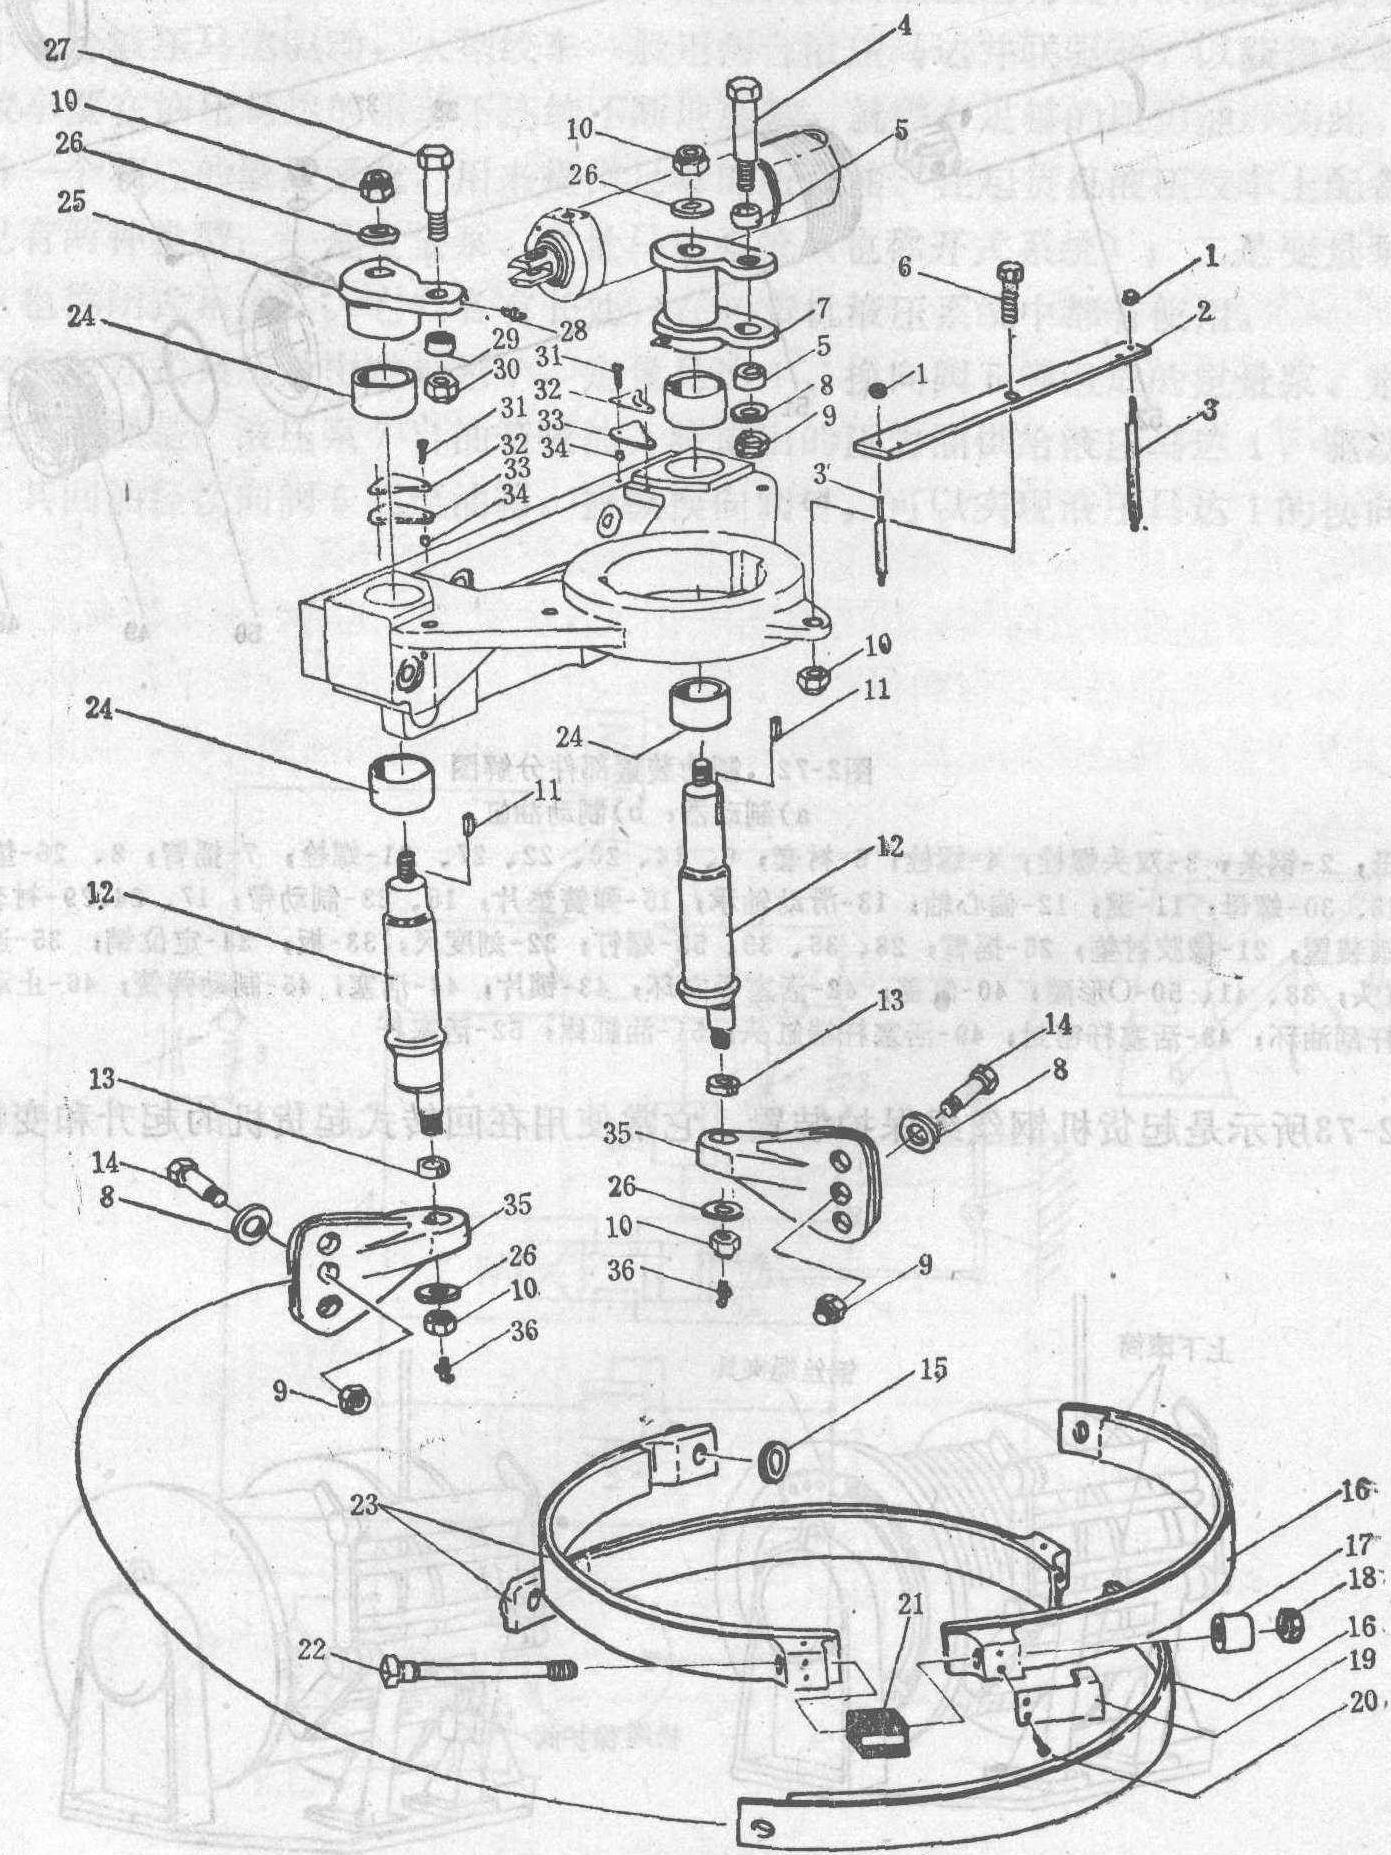 一、液压起货机的类型和结构